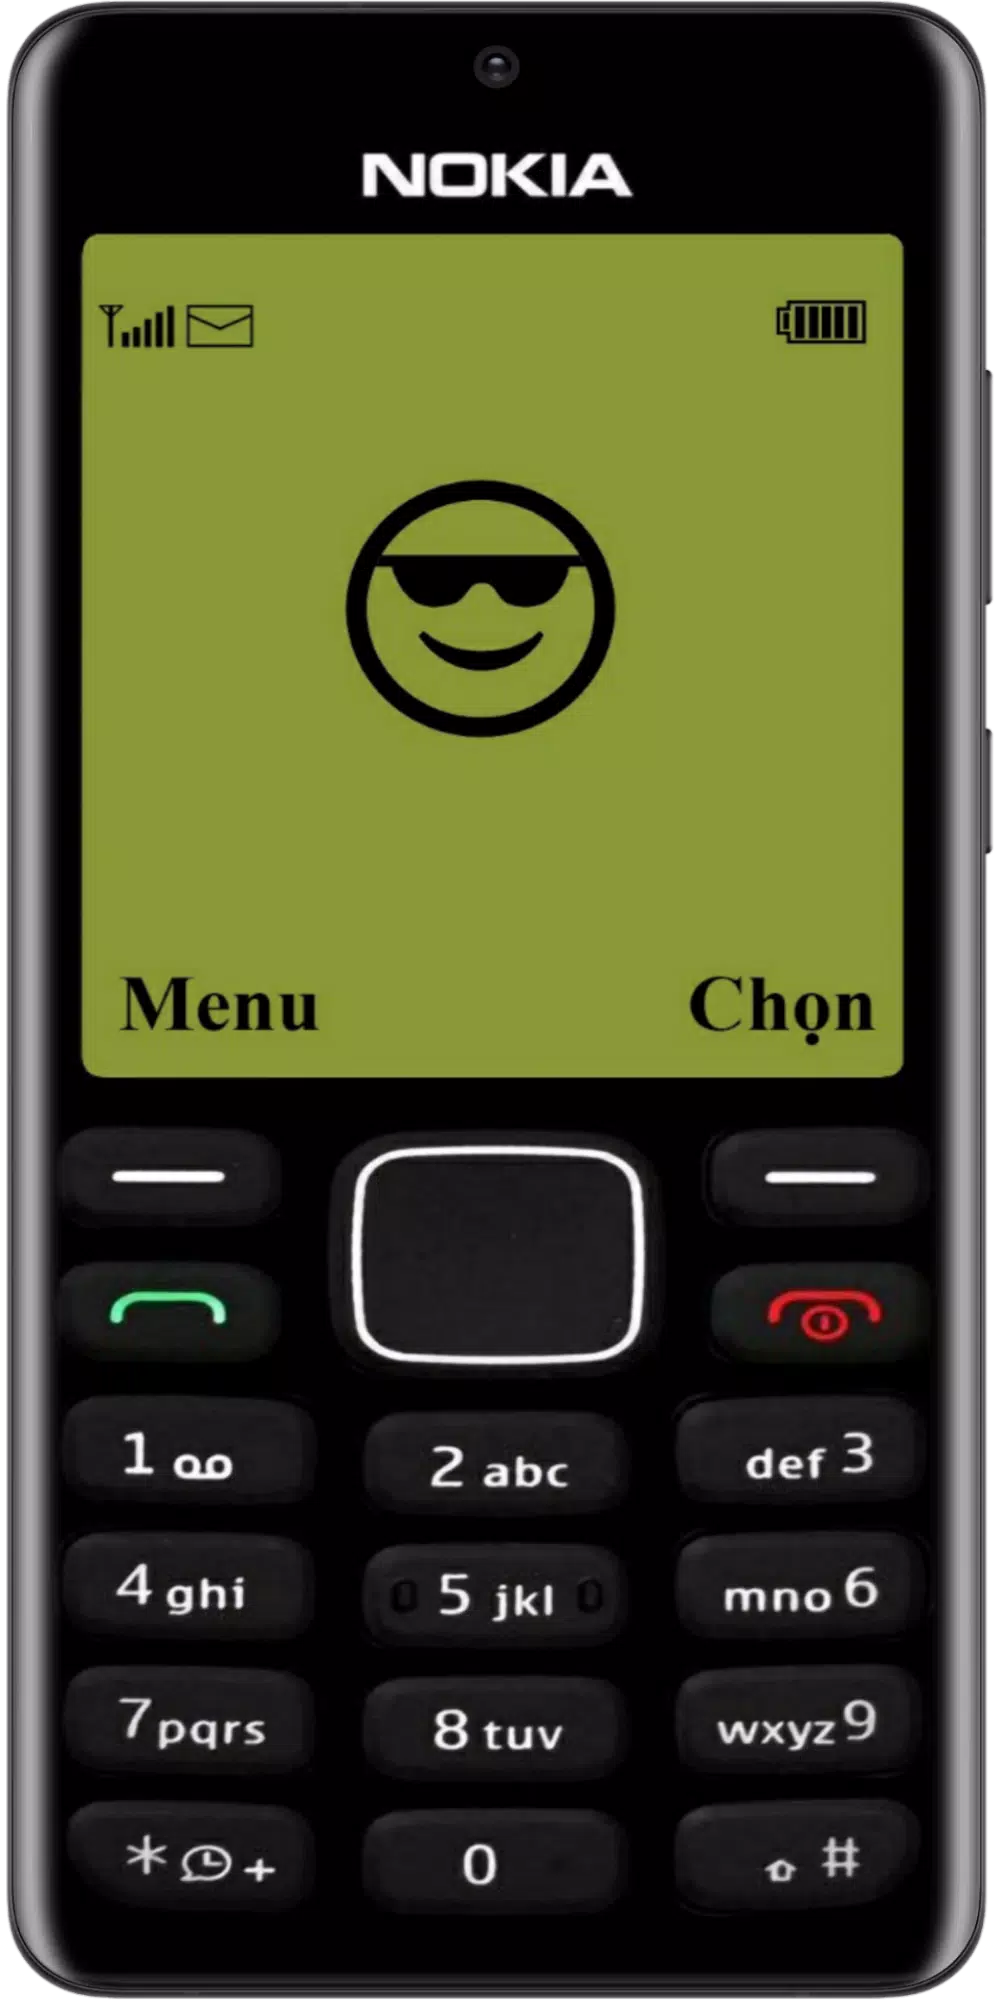 Giả lập APK cho Nokia cổ mang đến cho bạn trải nghiệm giống như sử dụng điện thoại cổ điển ngày xưa. Hãy khám phá những mẫu thiết kế tinh tế cho hình giao diện điện thoại Nokia 1280 tuyệt đẹp, giúp bạn nghĩ đến những kỷ niệm xưa với chiếc điện thoại đơn giản và bền bỉ.